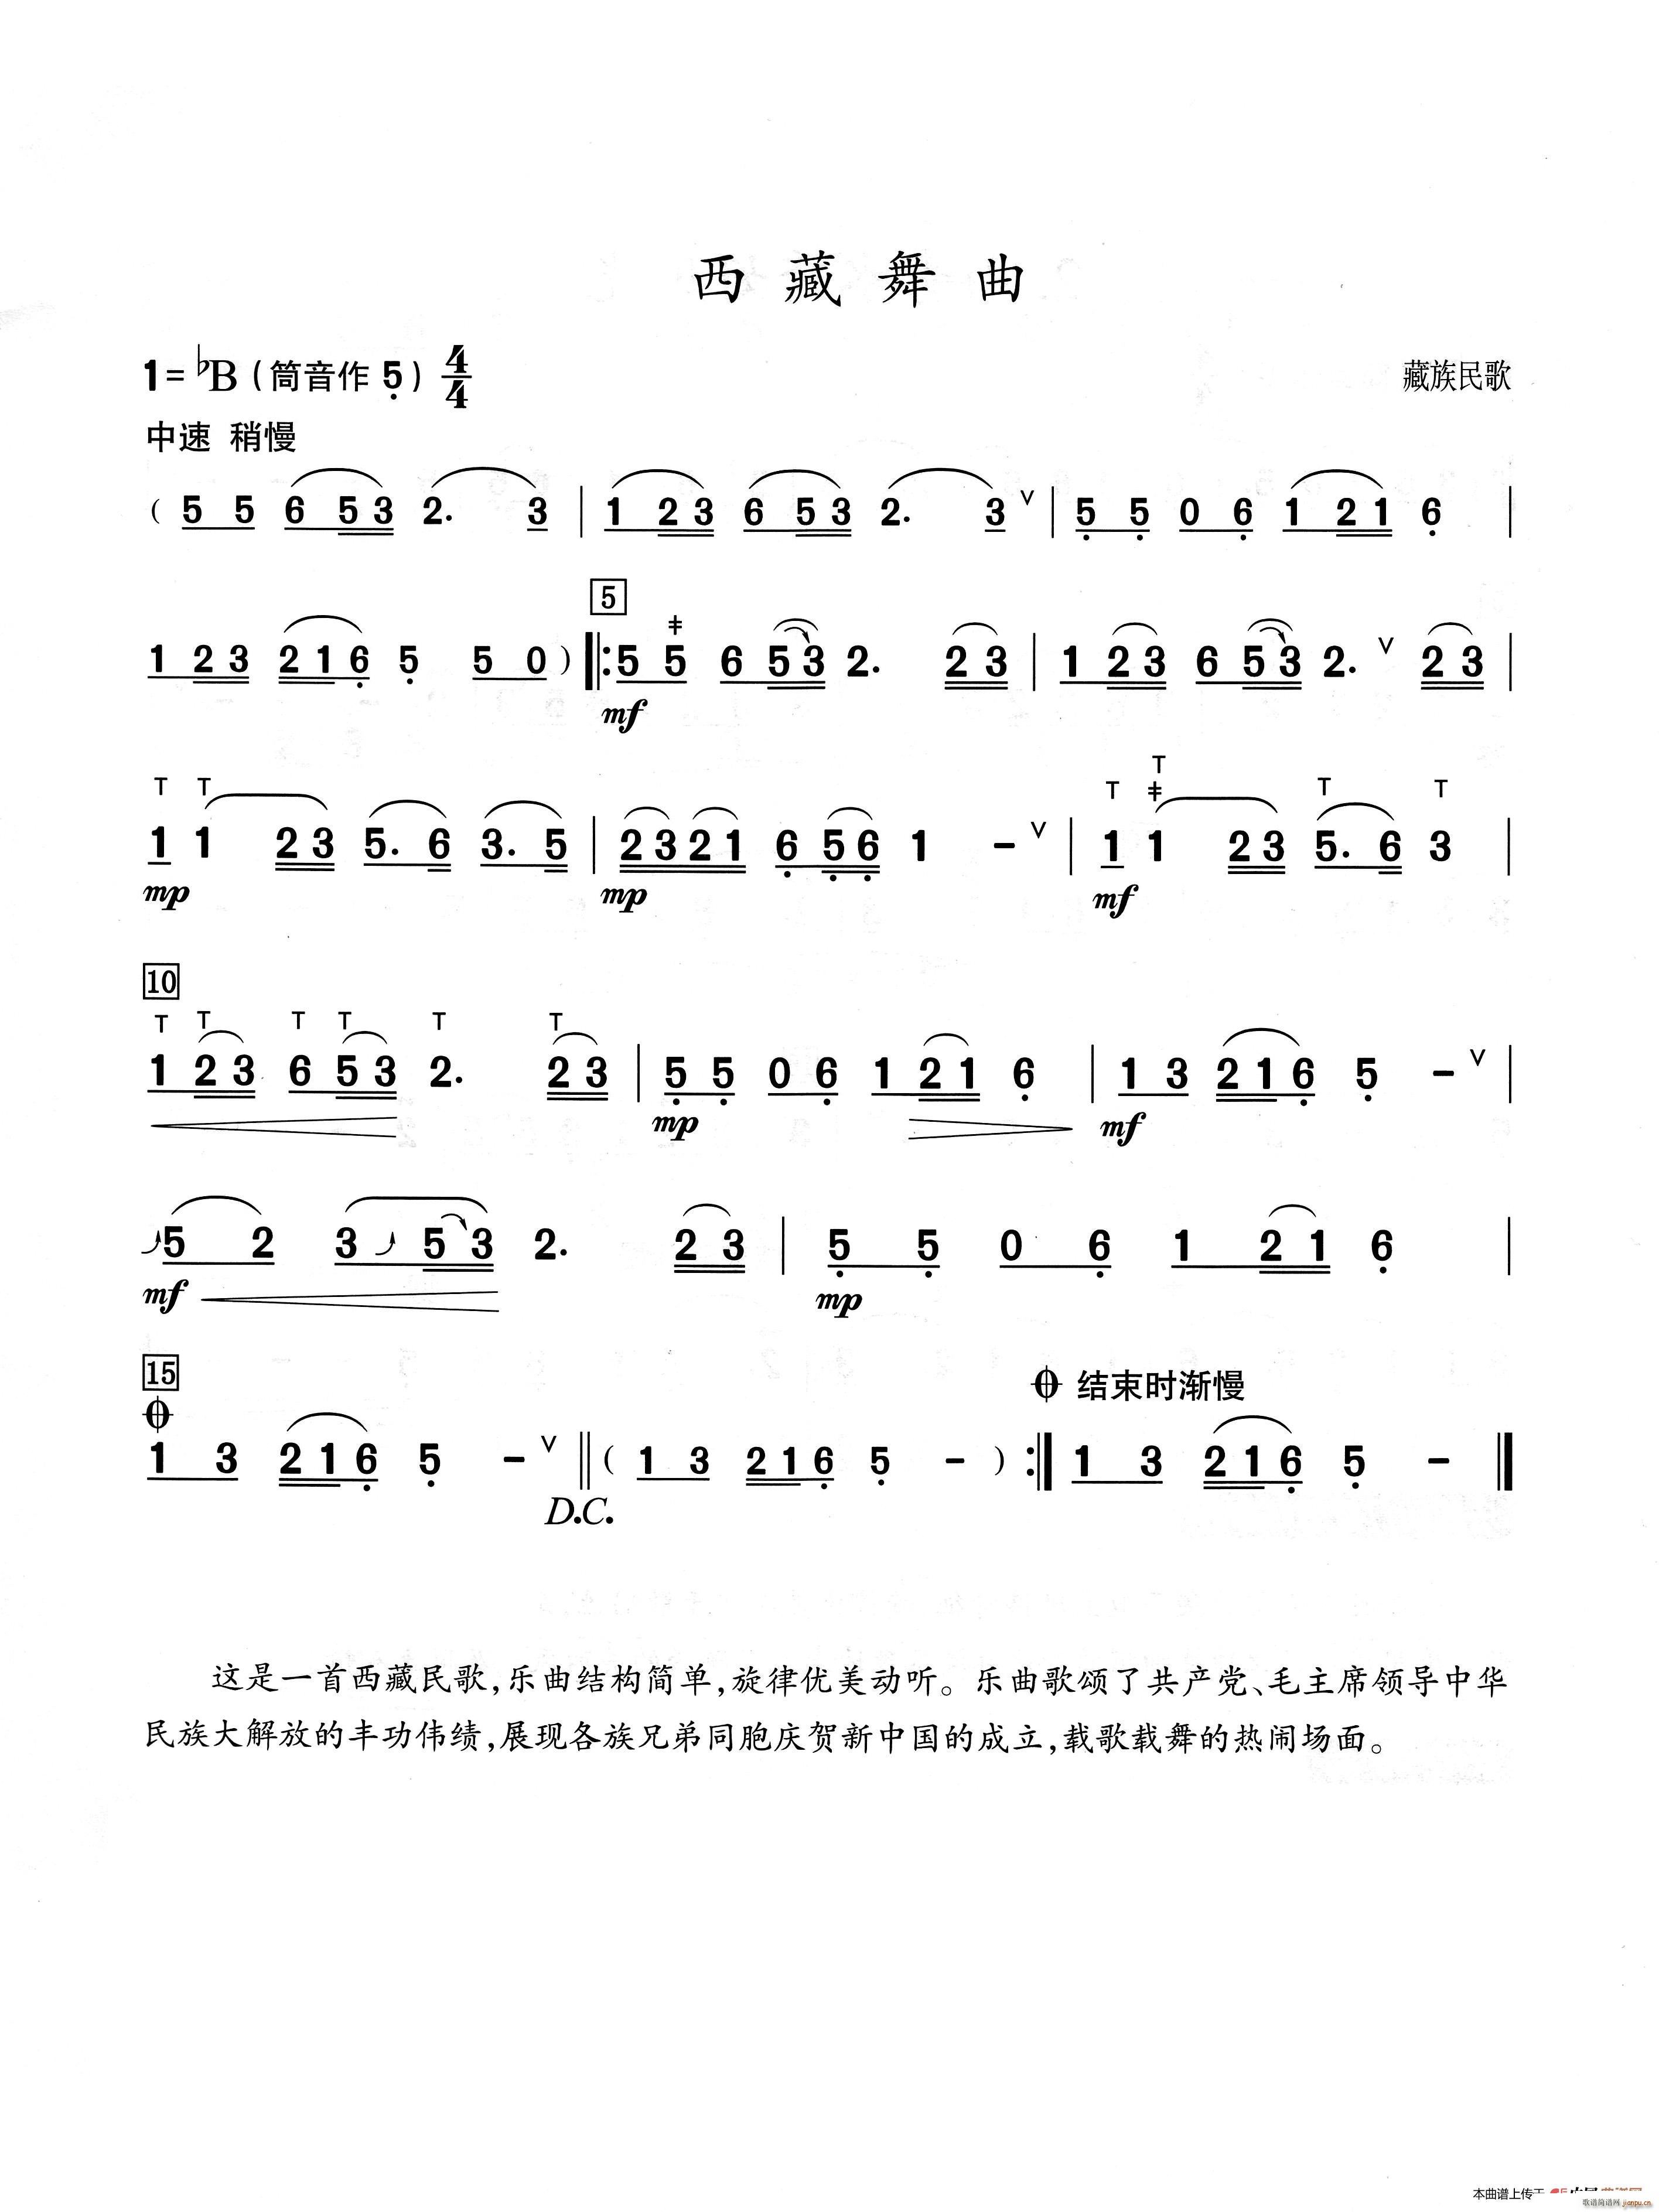 西藏舞曲 葫芦丝演奏提示版(葫芦丝谱)1